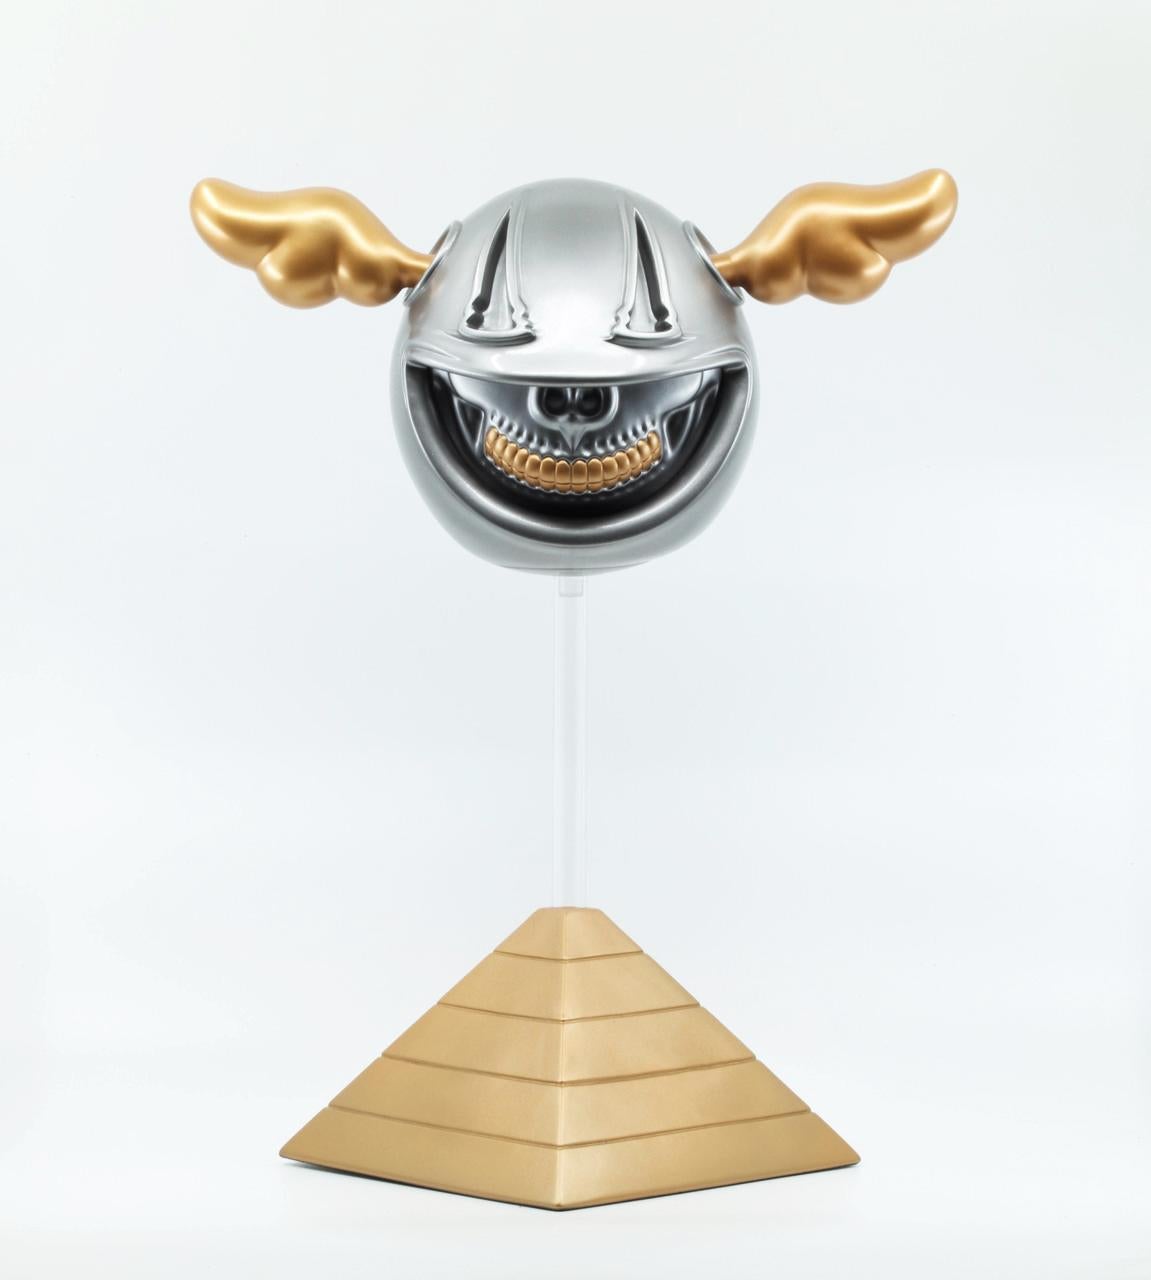 D*DOG GRIN (COLLABORATION AVEC RON ENGLISH) - Sculpture de D*Face